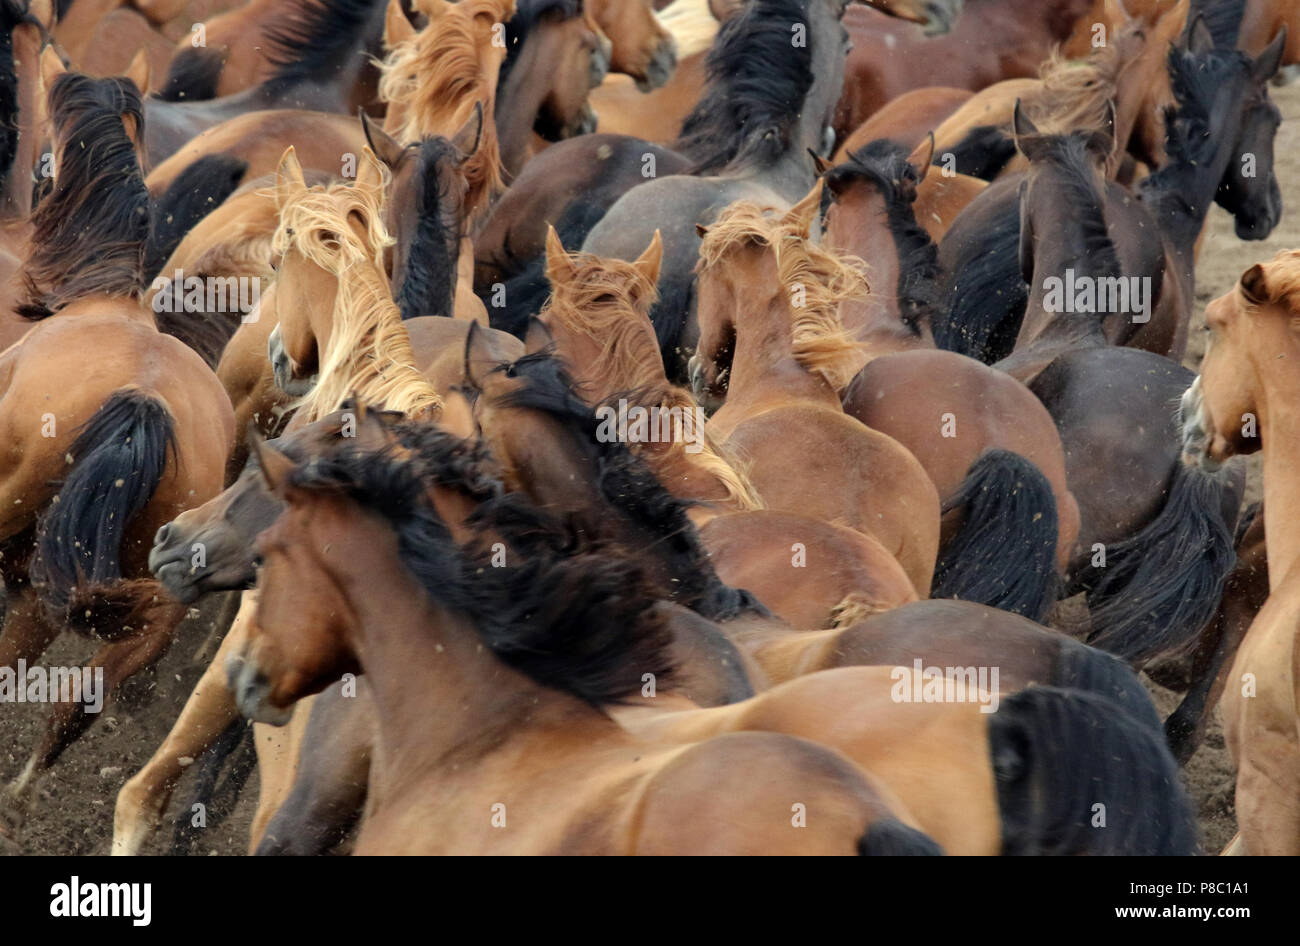 Ganschow cloutés, troupeau de chevaux au galop Banque D'Images